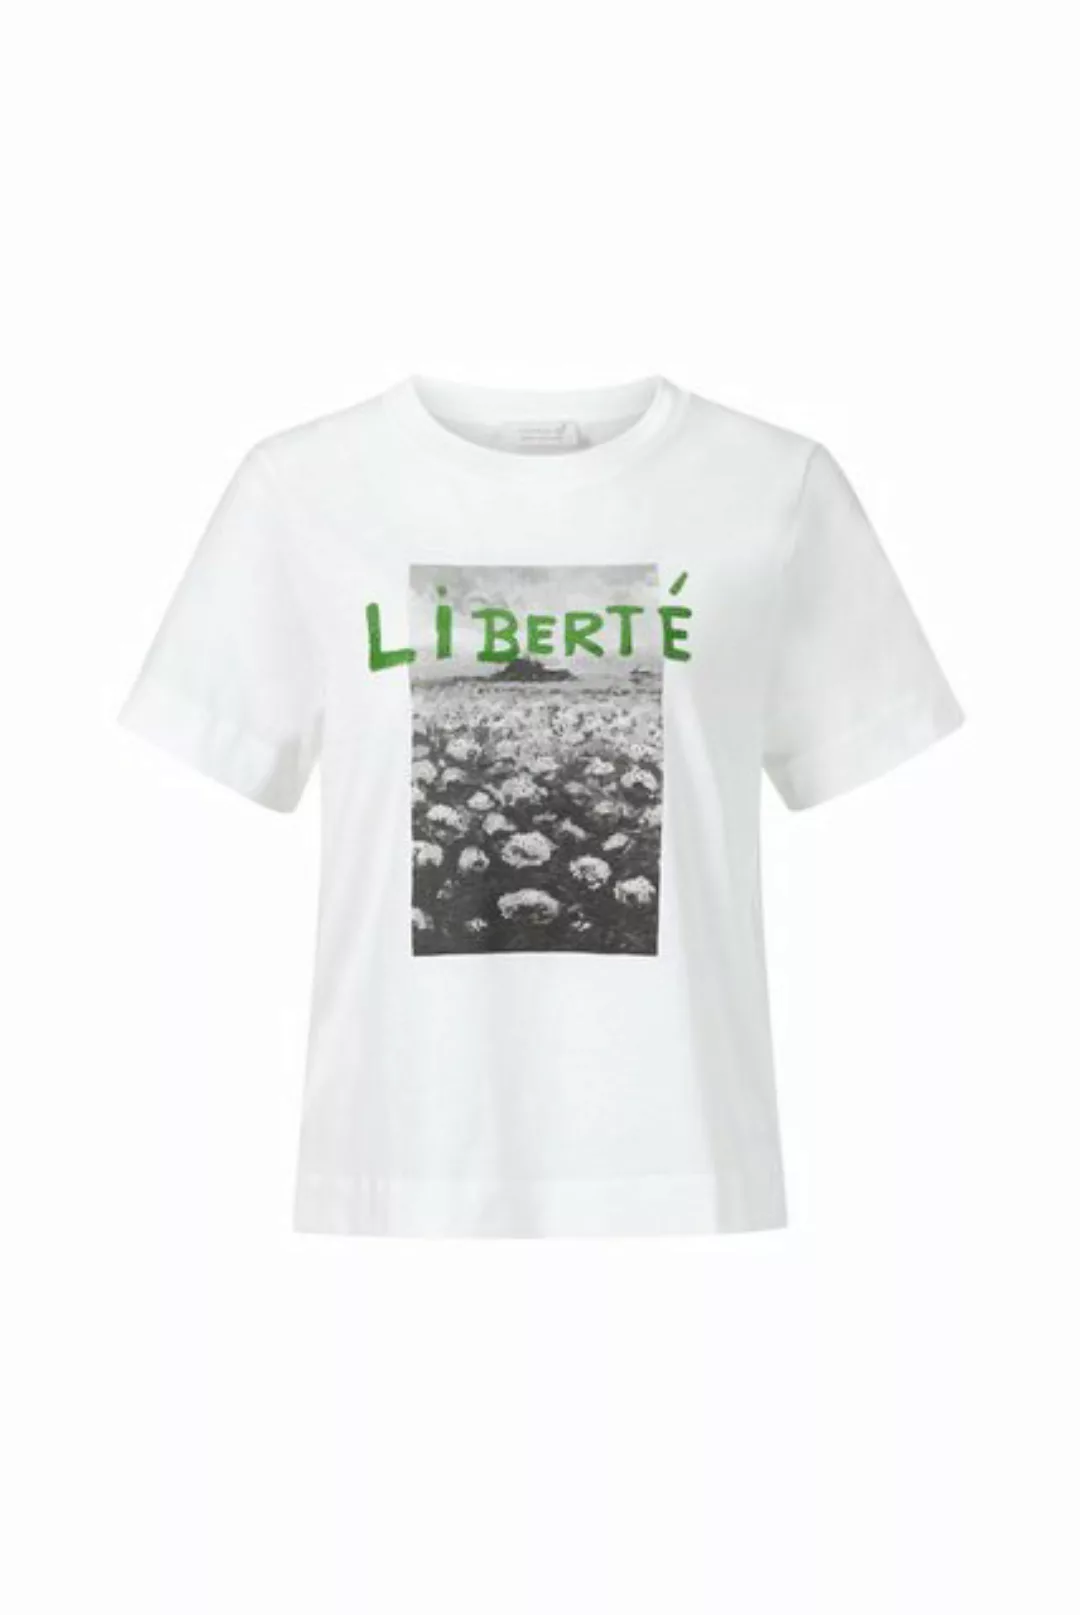 Rich & Royal T-Shirt T-Shirt libert with flowerfield organic günstig online kaufen